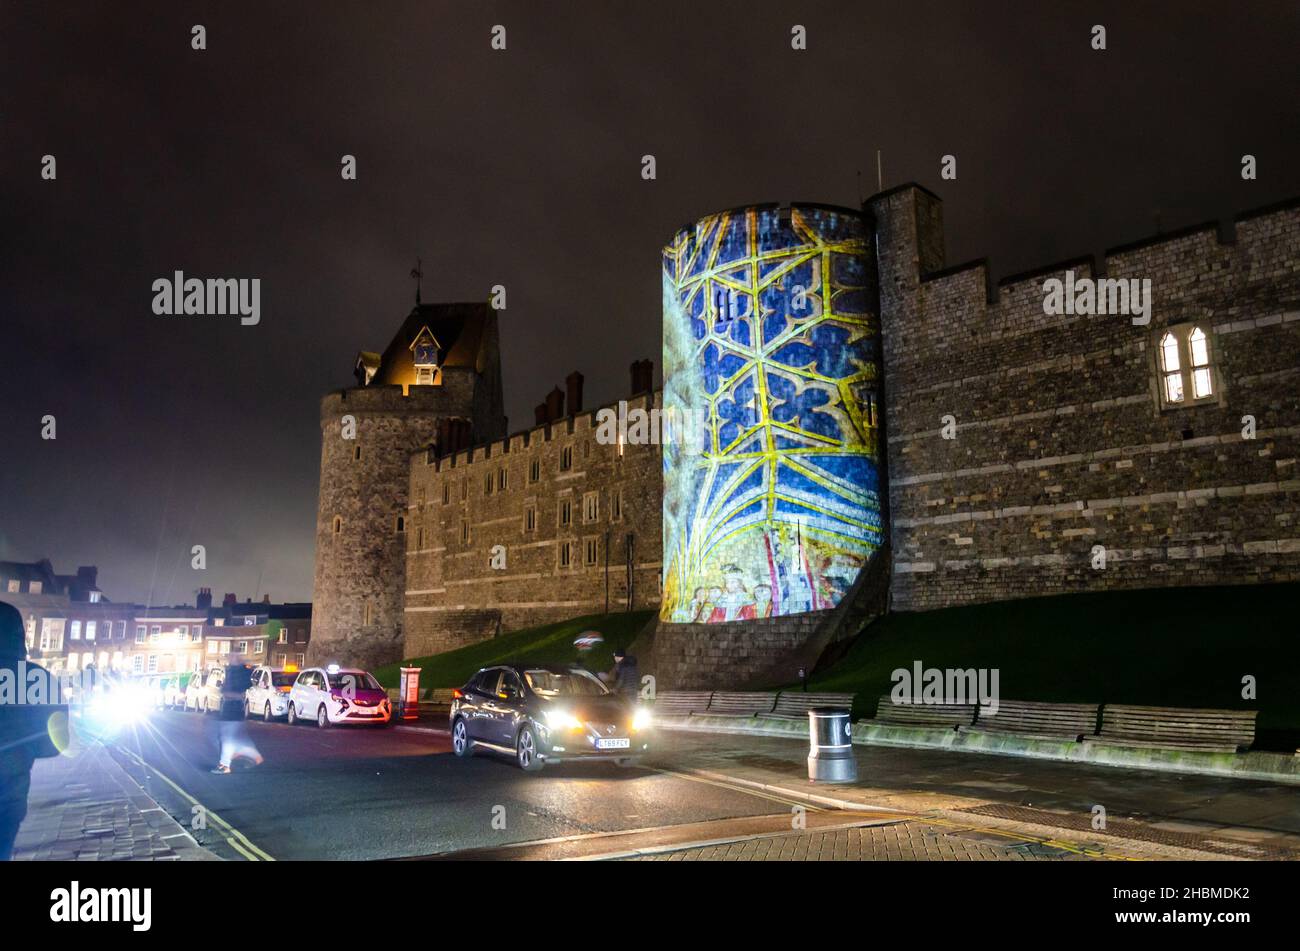 Festliche Bilder werden auf einen der Türmchen an der Außenwand von Windsor Castle in der englischen Grafschaft „The Castle“ projiziert. Stockfoto